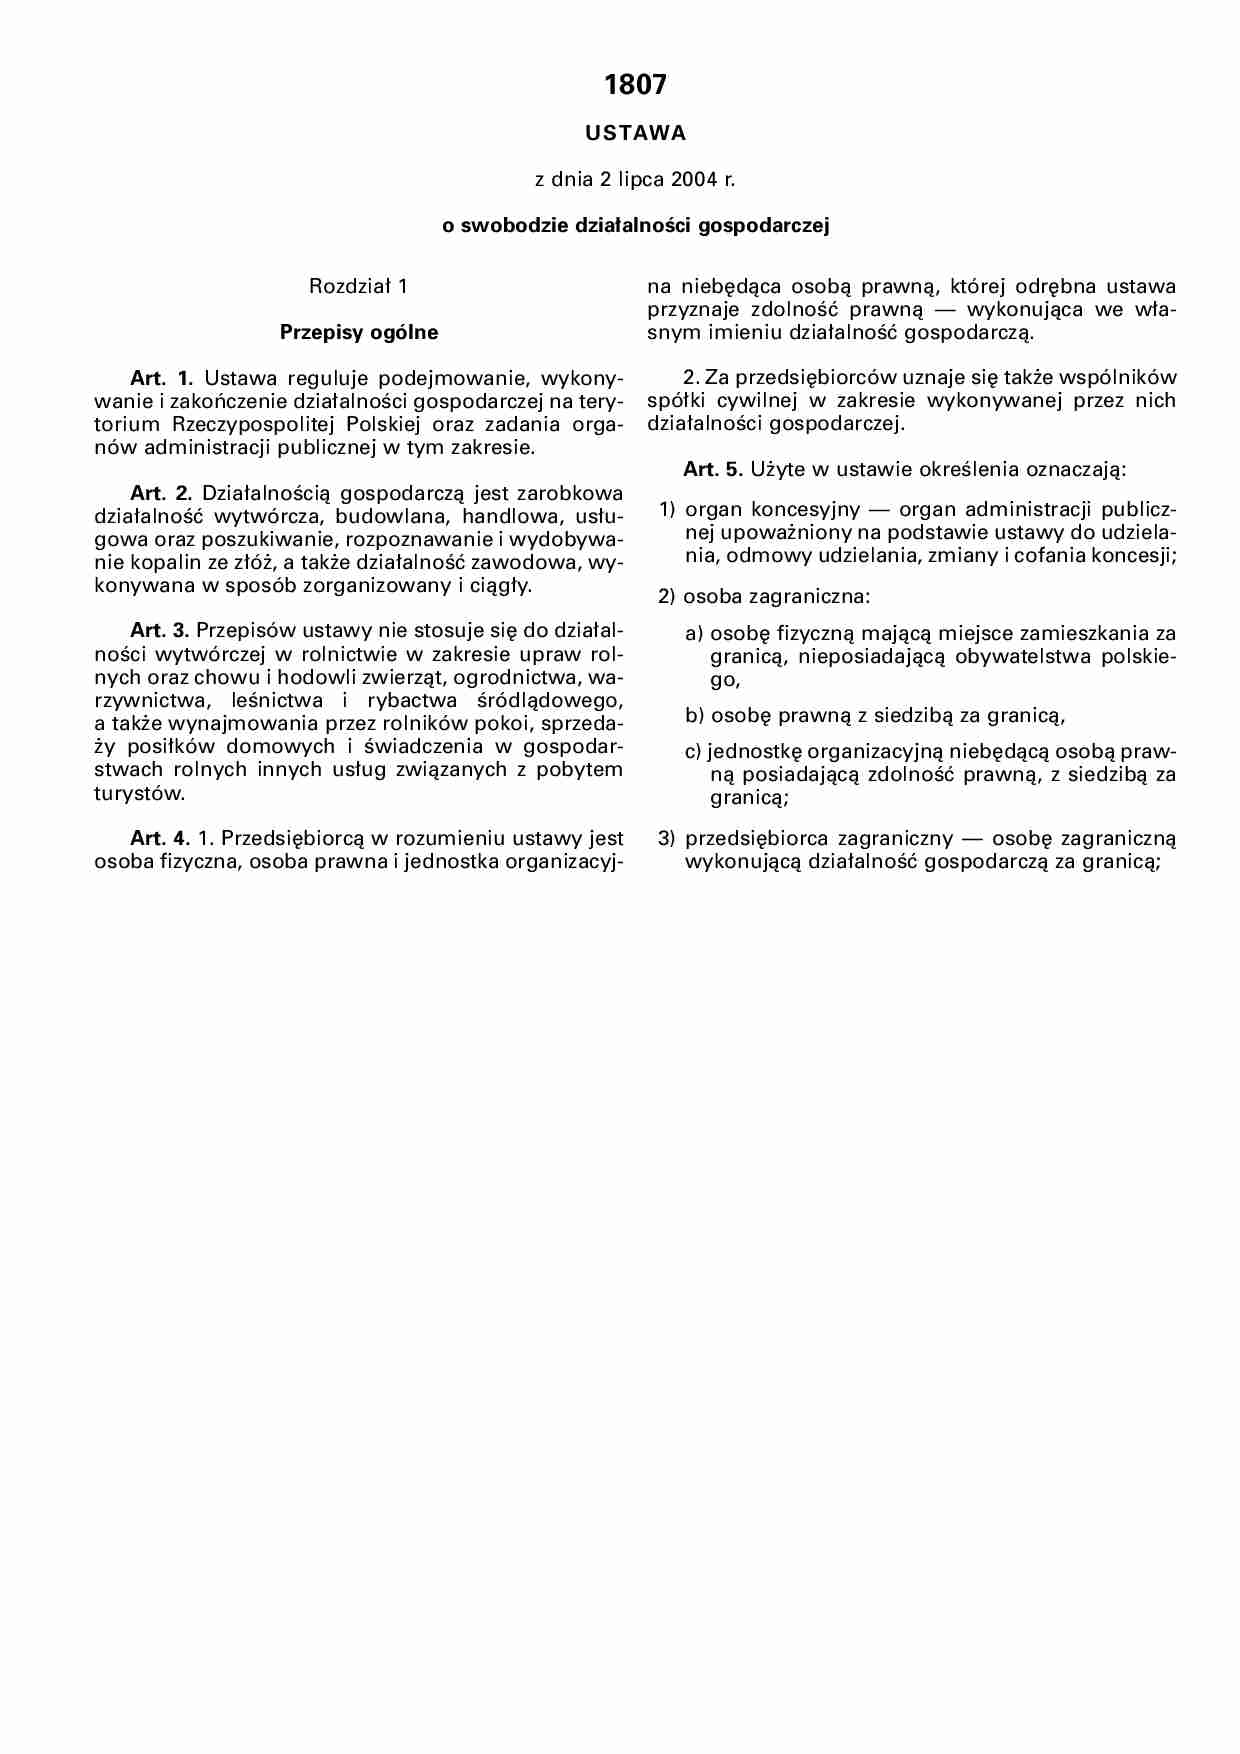 ustawa o swobodzie gospodarczej - strona 1